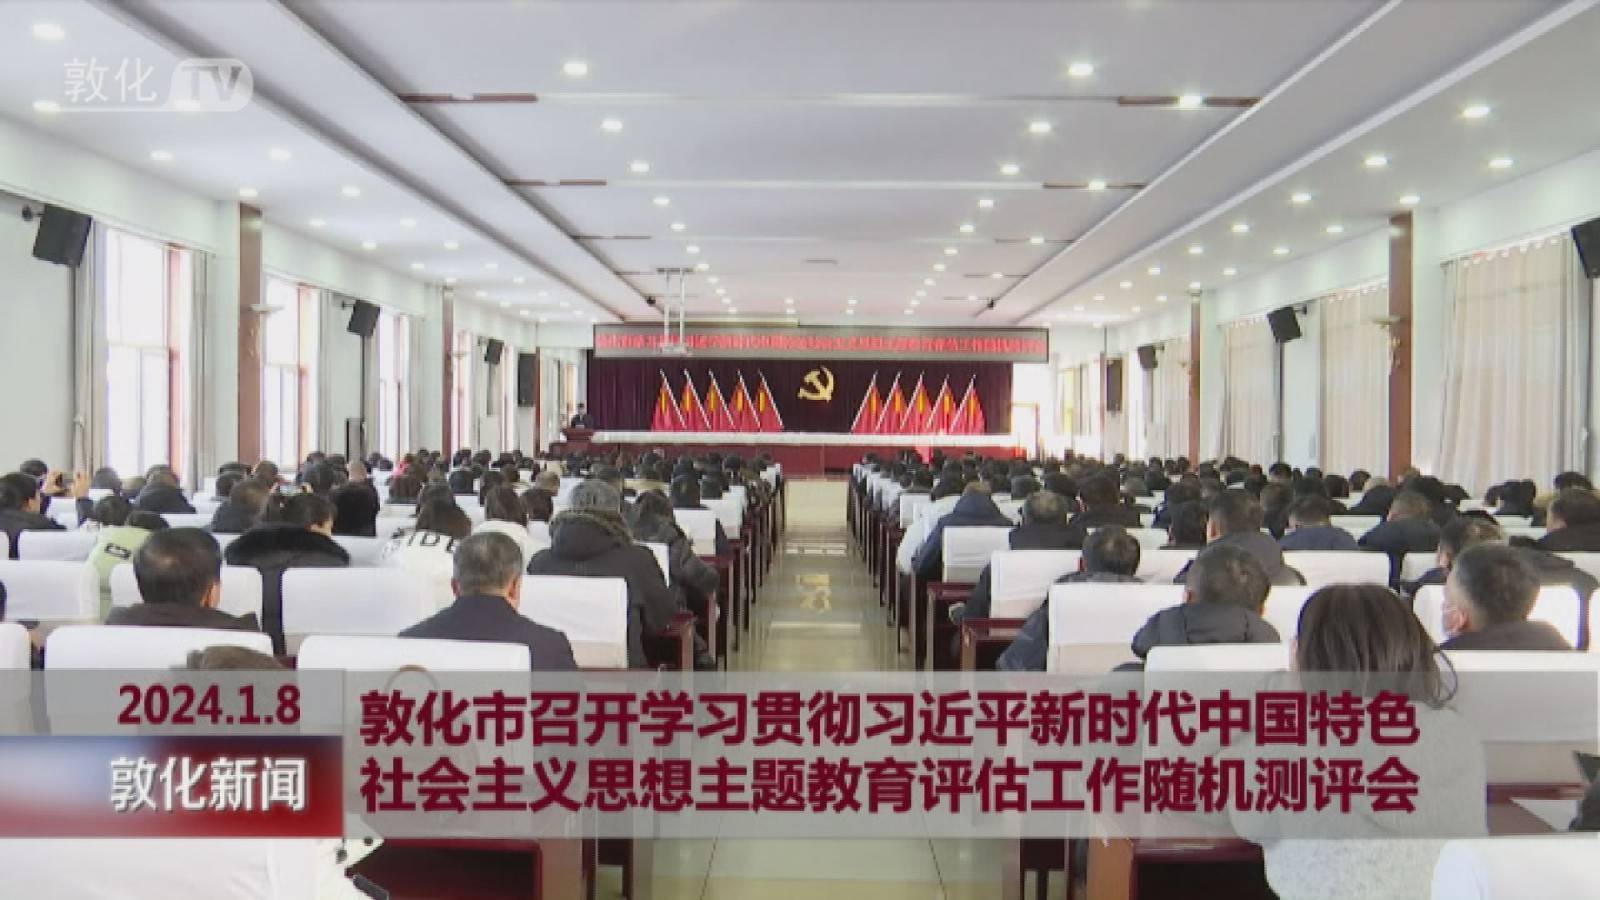 敦化市召开学习贯彻习近平新时代中国特色社会主义思想主题教育评估工作随机测评会